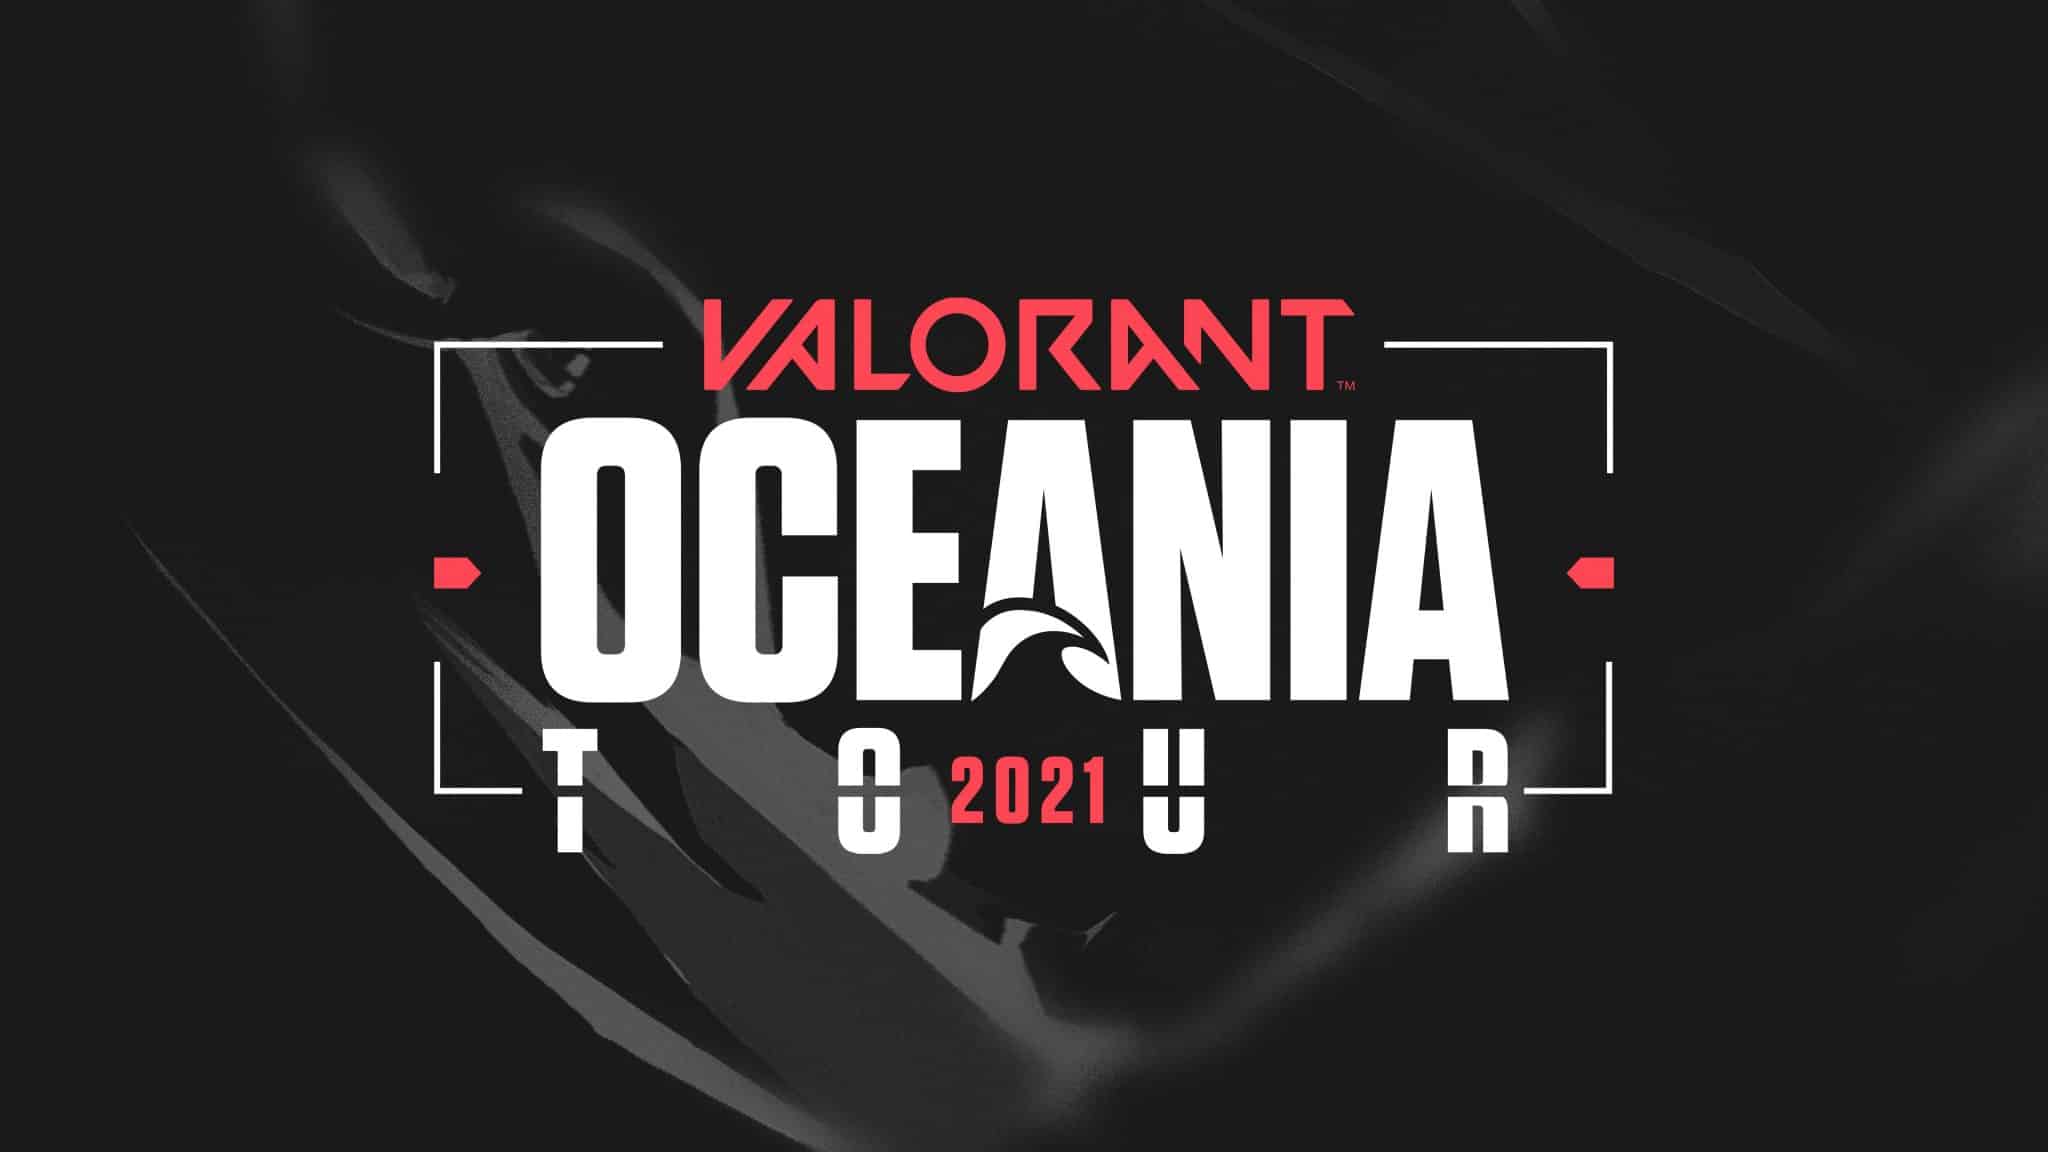 Valorant Oceania Tour banner